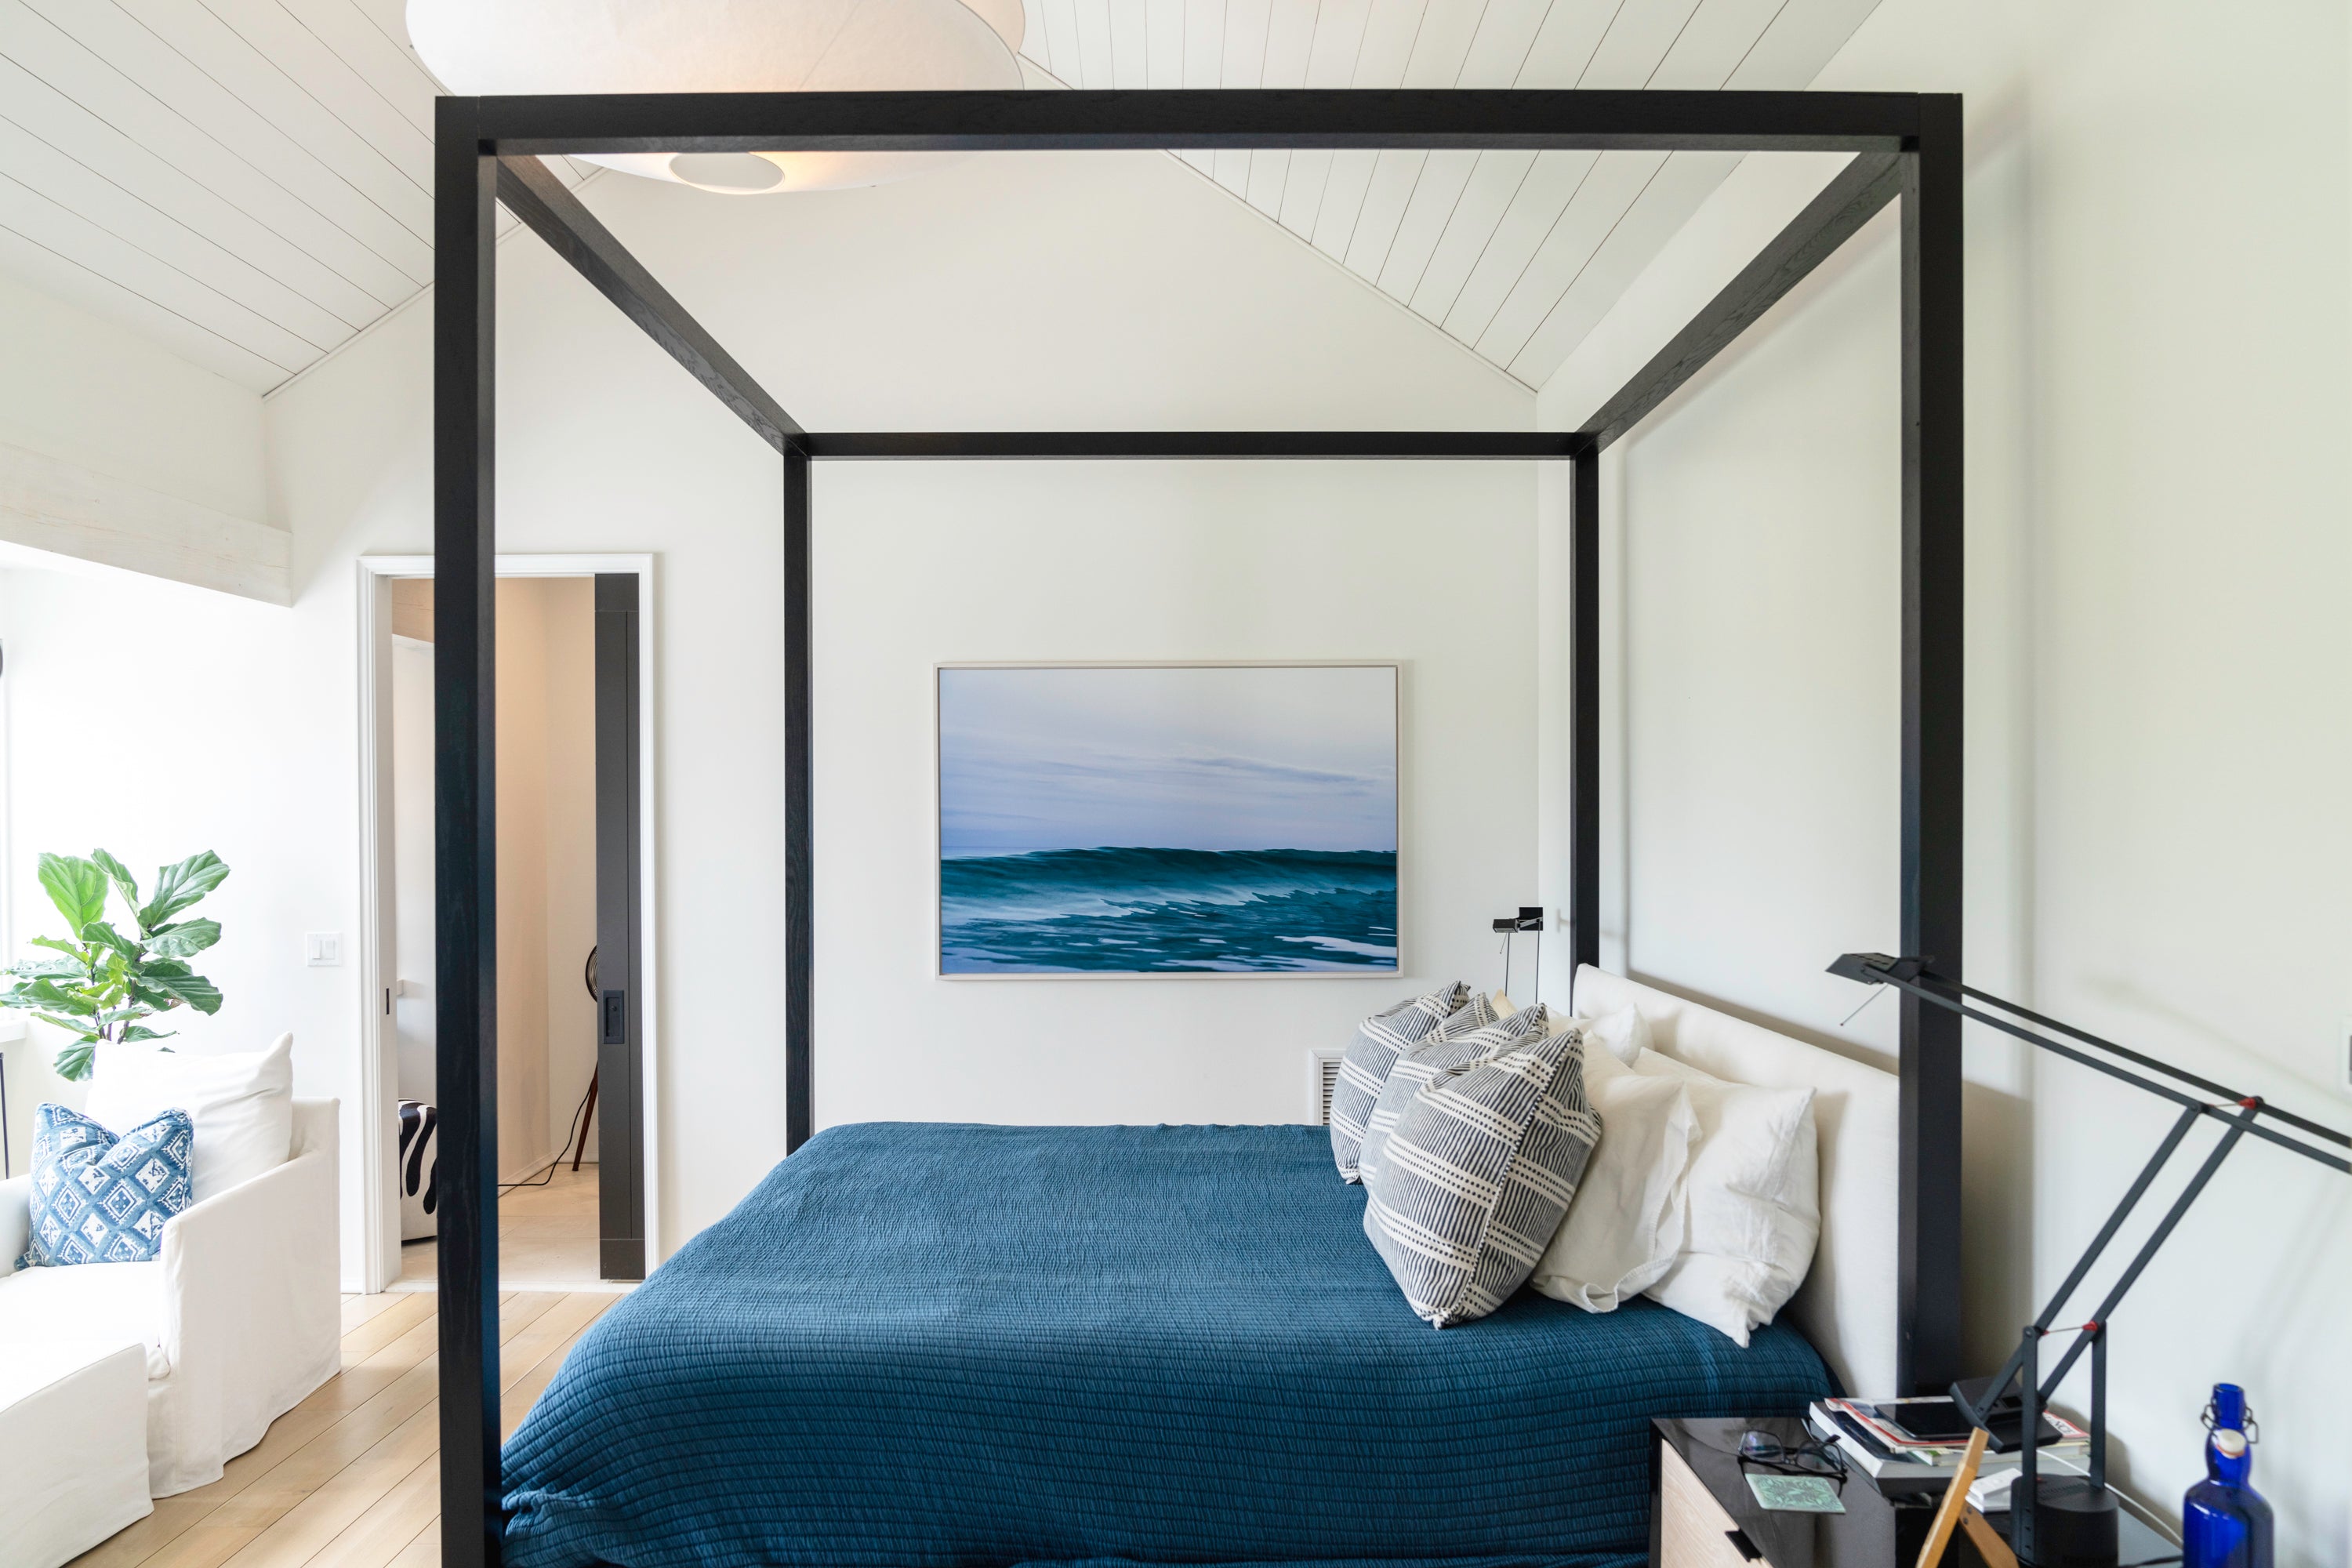 Walkthrough of “Peak No. 53” in a stunning Master Bedroom